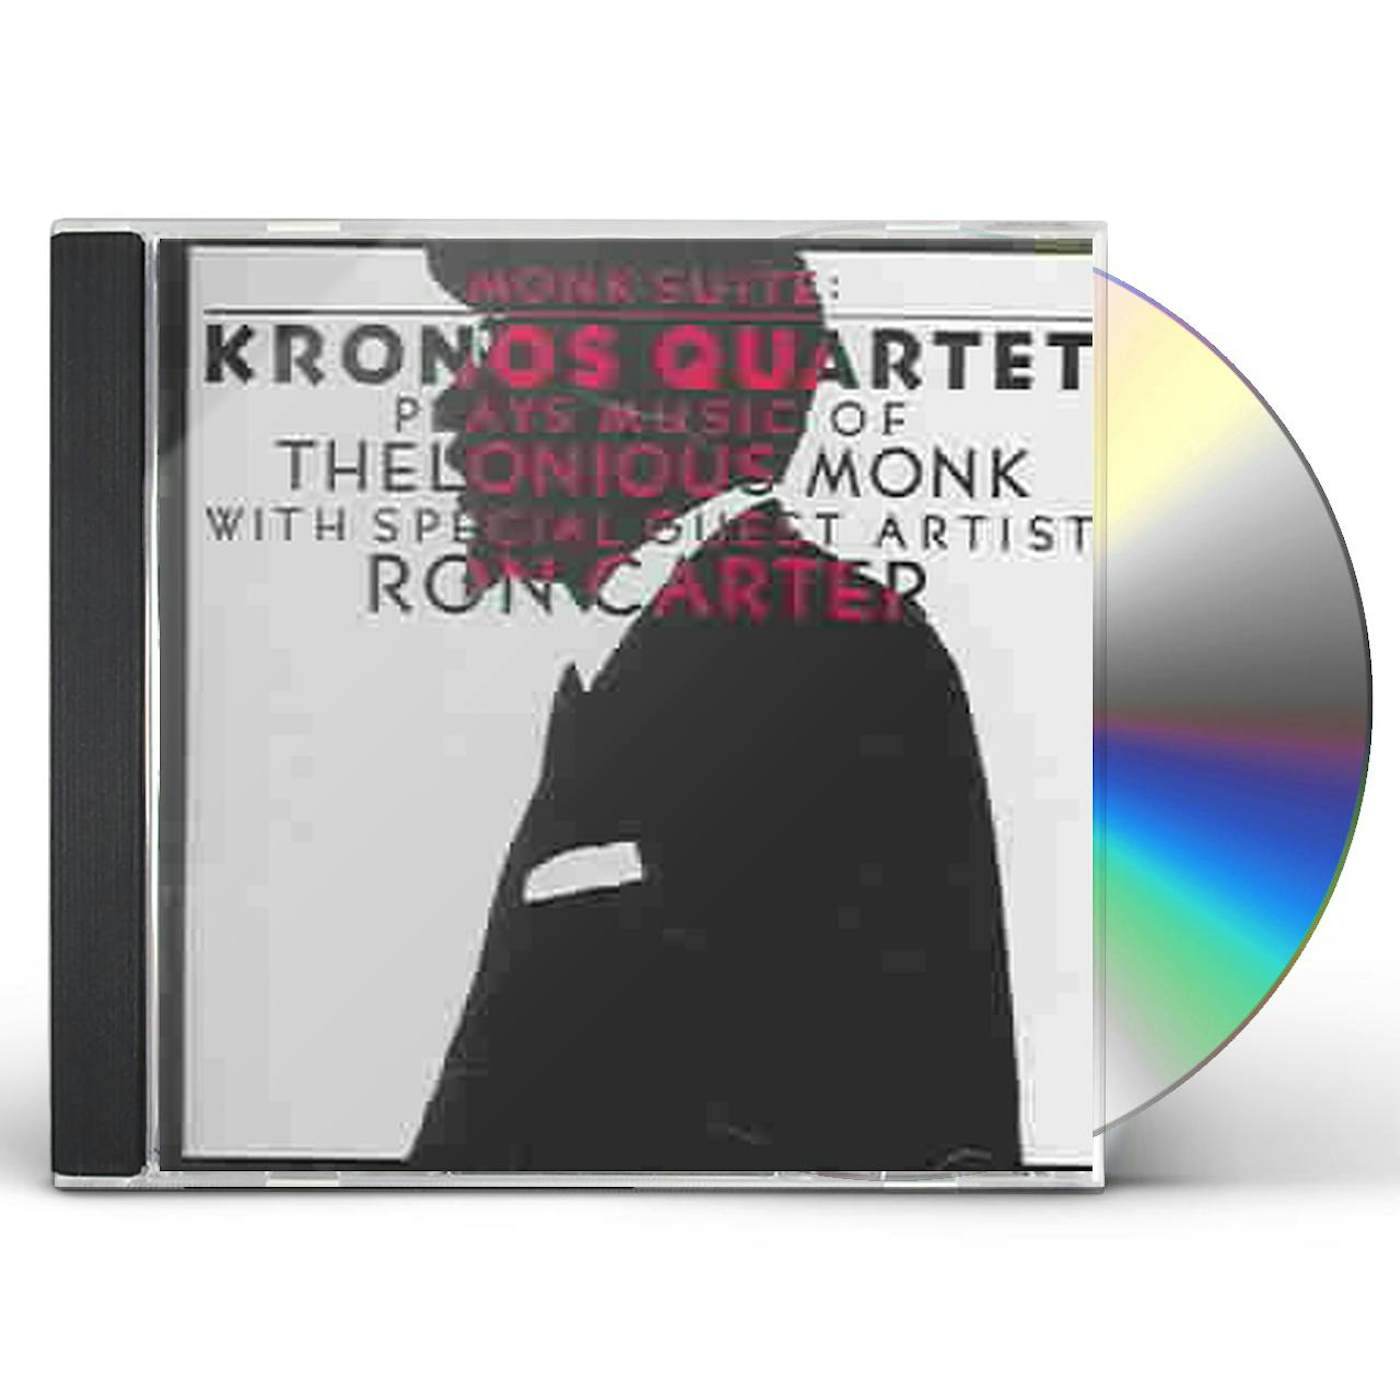 Kronos Quartet MONK SUITE CD